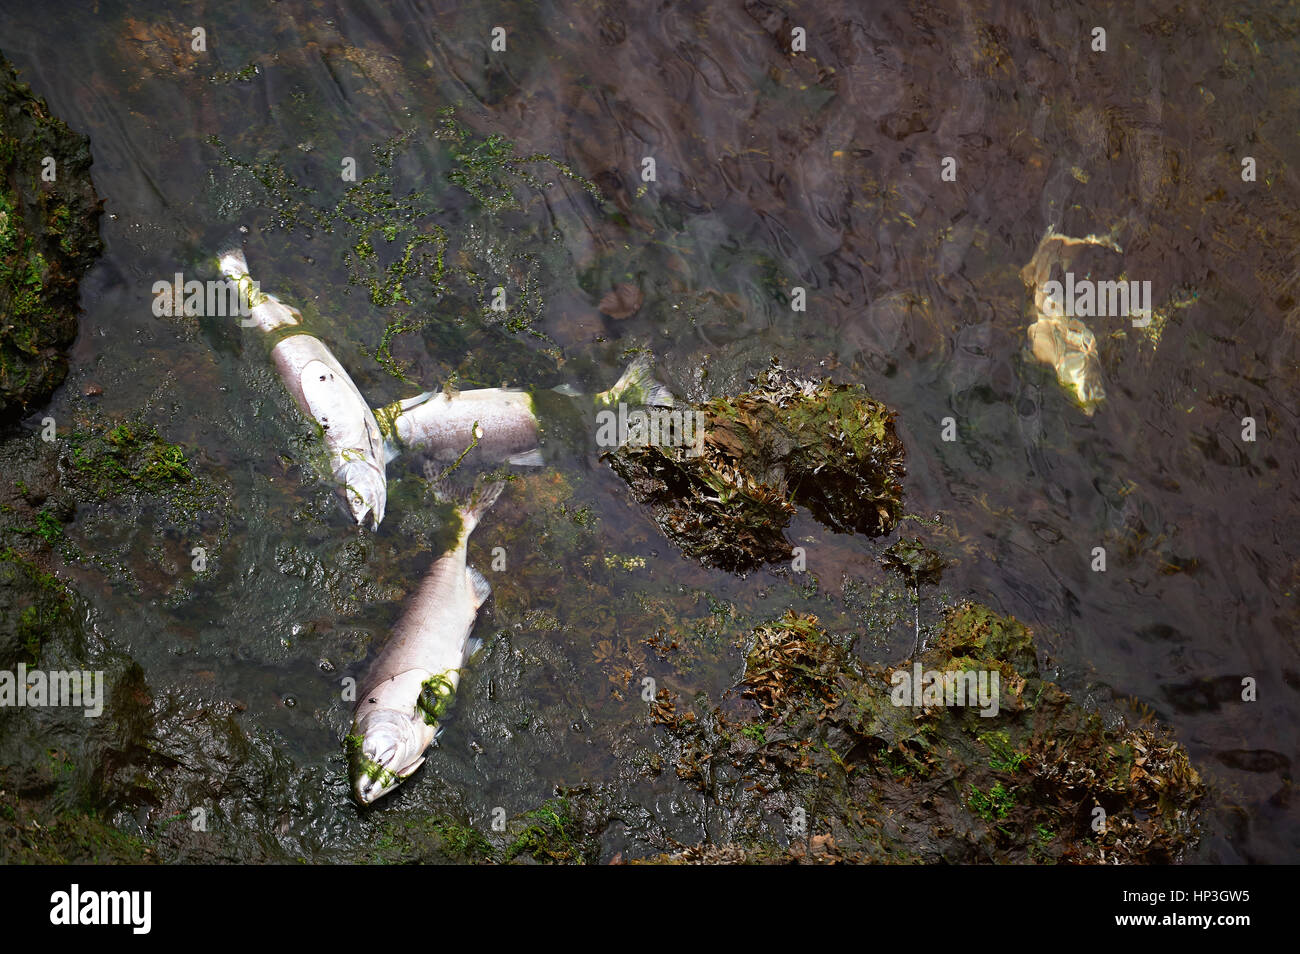 Tote Fische im Fluss nach Verschmutzung. Ökologie Umwelt Problem Abfall im Wasser. Stockfoto